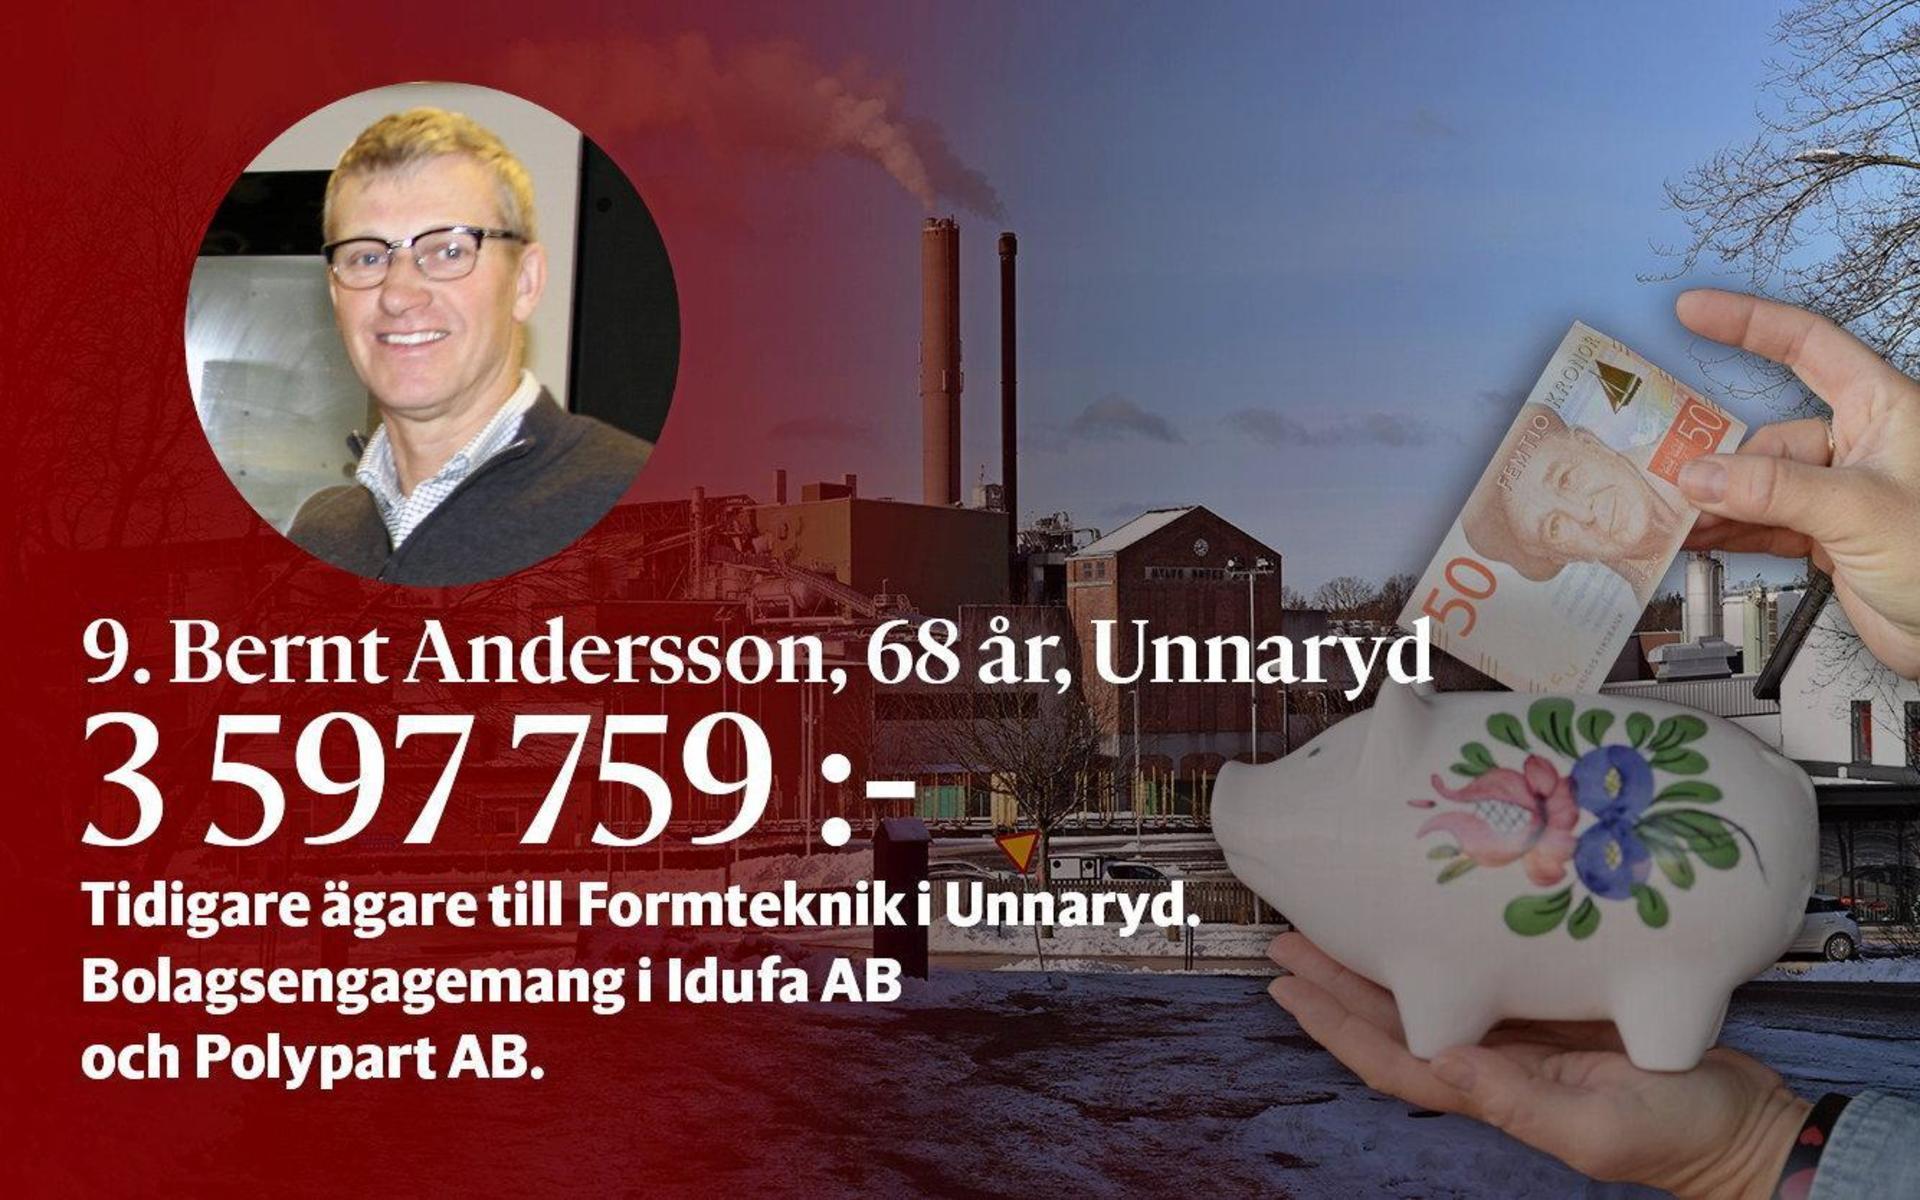 9. Bernt Andersson var tidigare ägare till Formteknik i Unnaryd. I dag är han involverad i bolagen Idufa AB och Polypart AB.